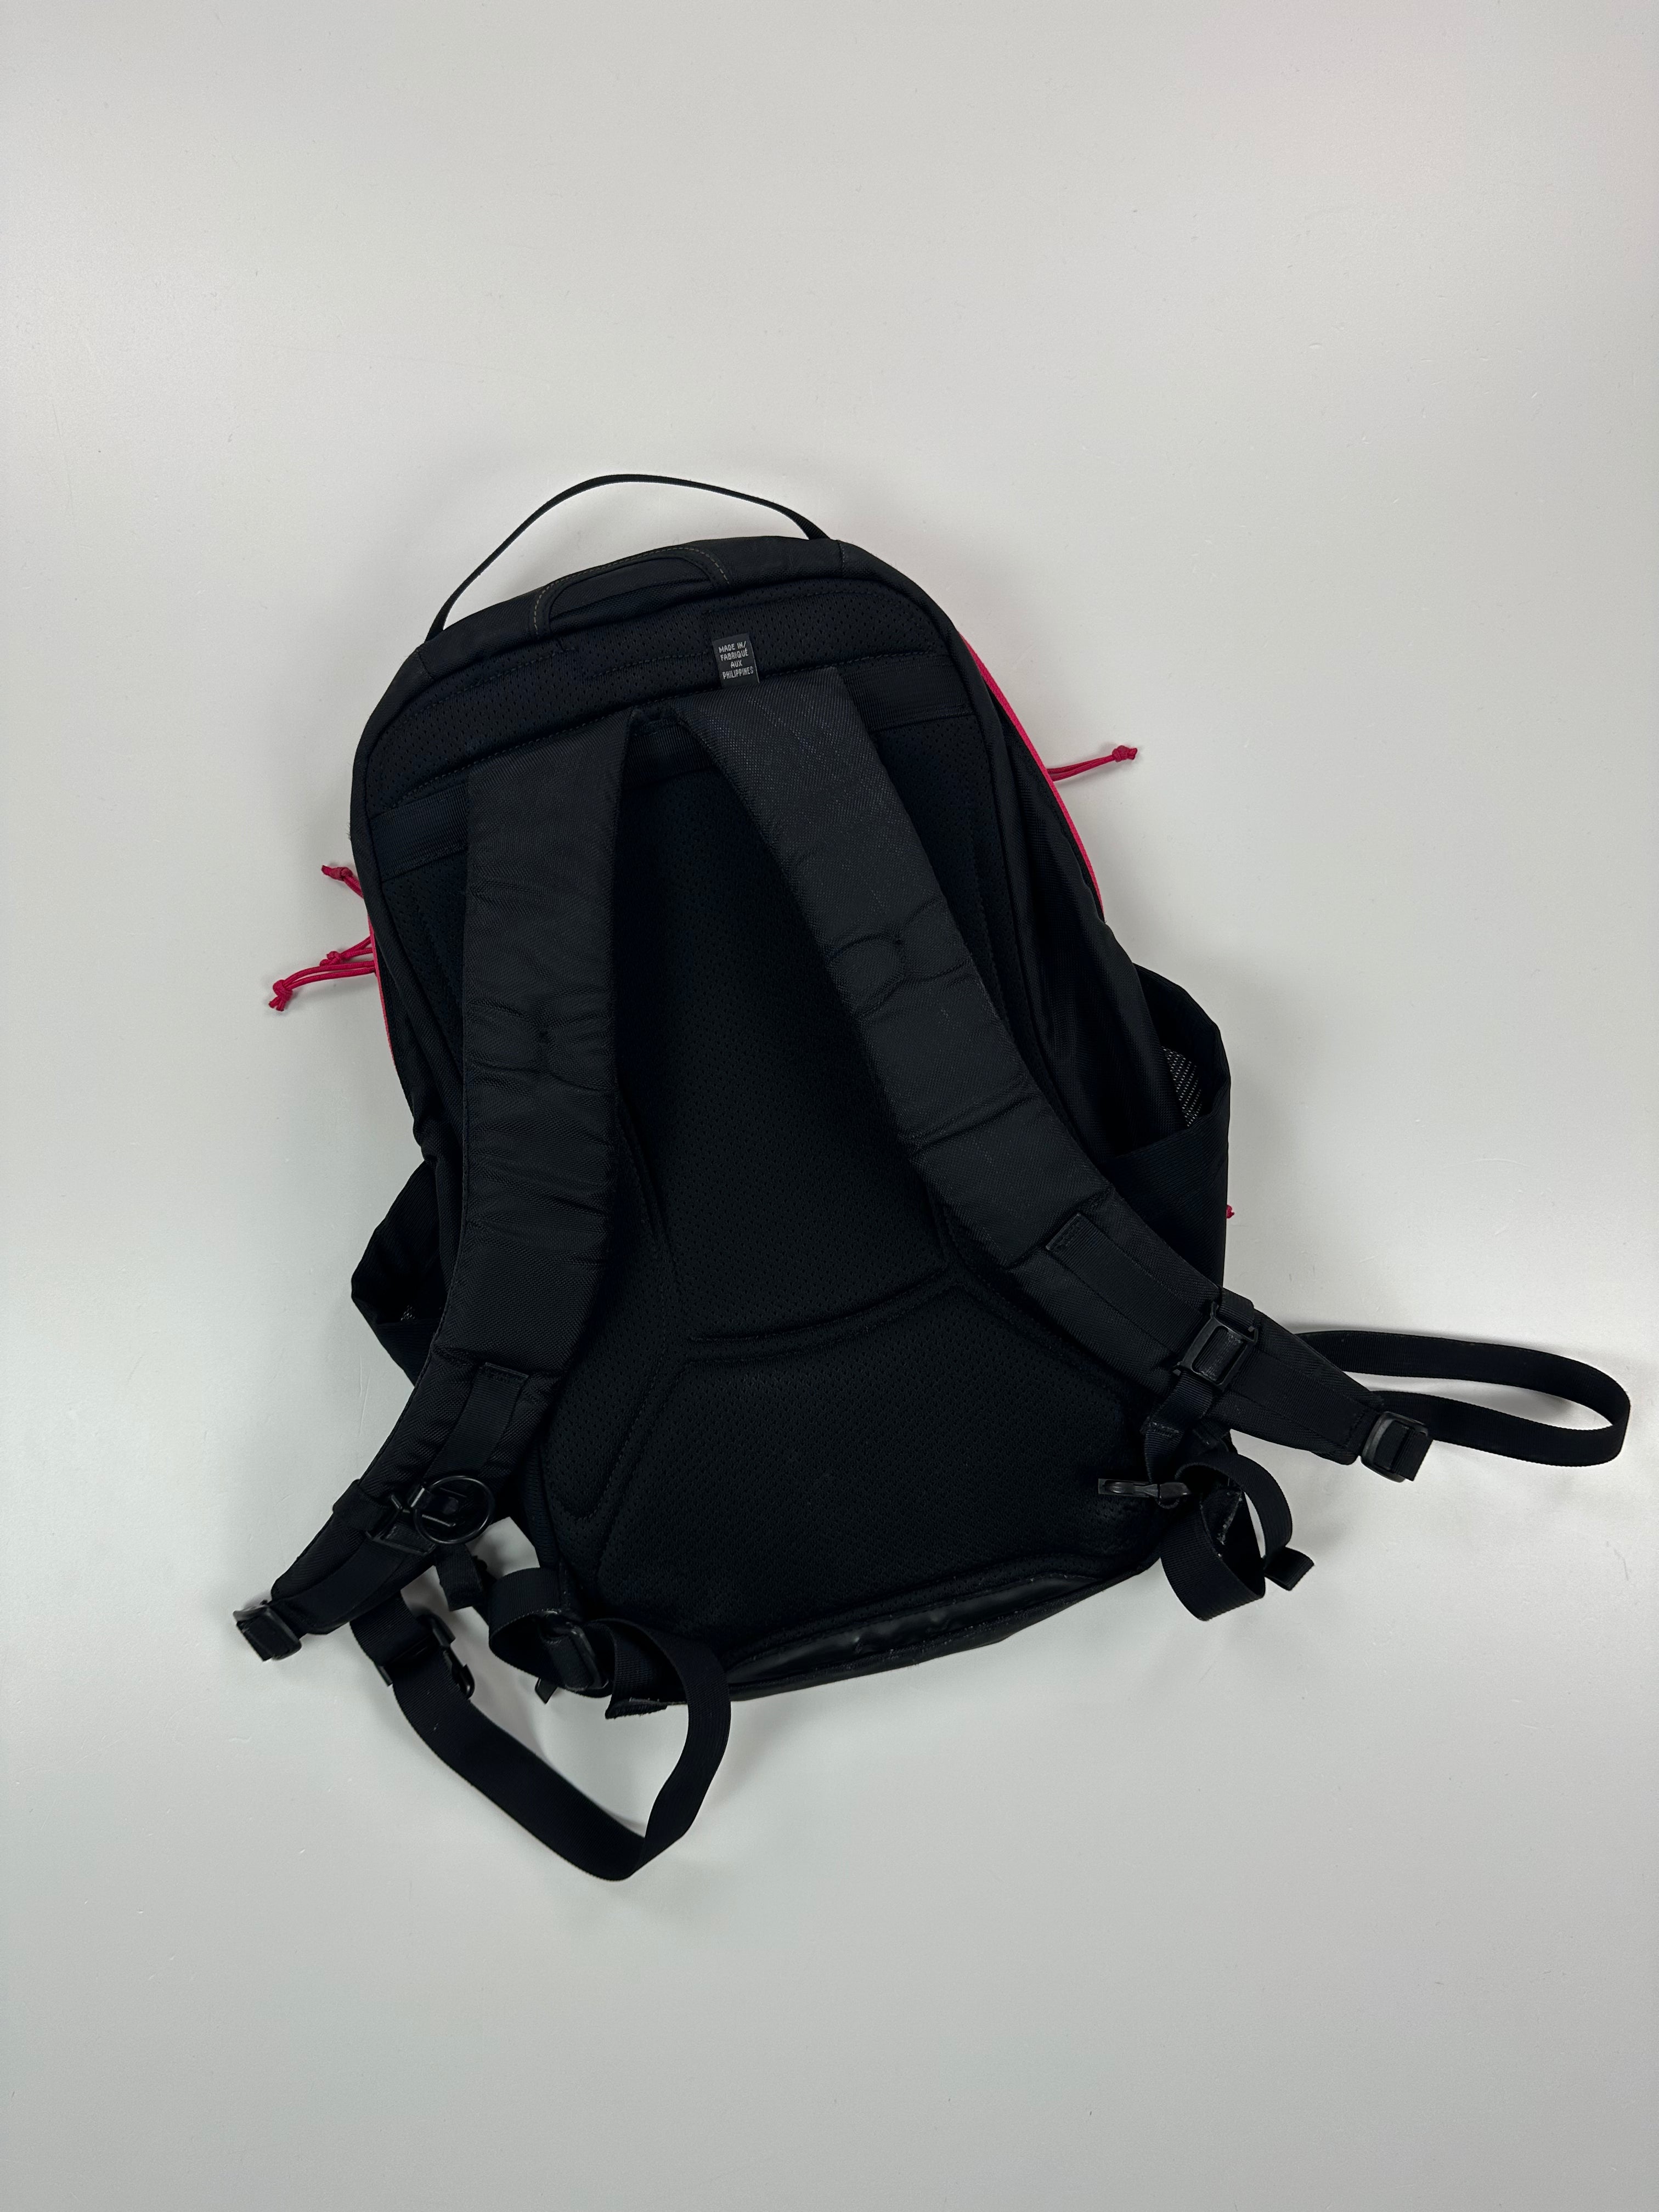 Arc’teryx X Beams Mantis 26 Backpack Black Pink